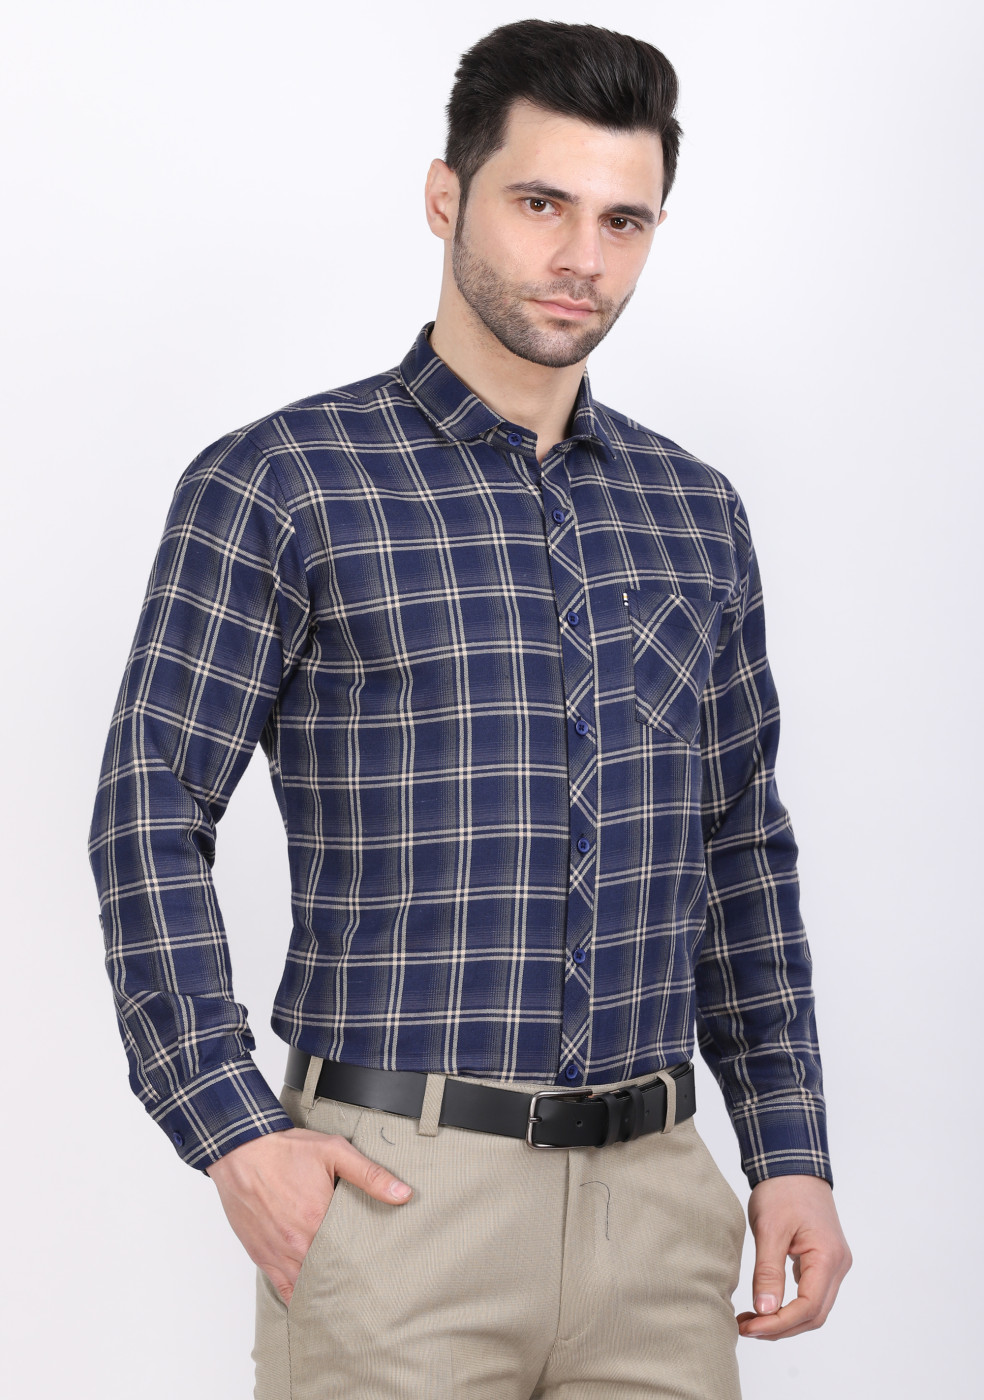 ASHTOM Navy & Khaki Shirt For Men